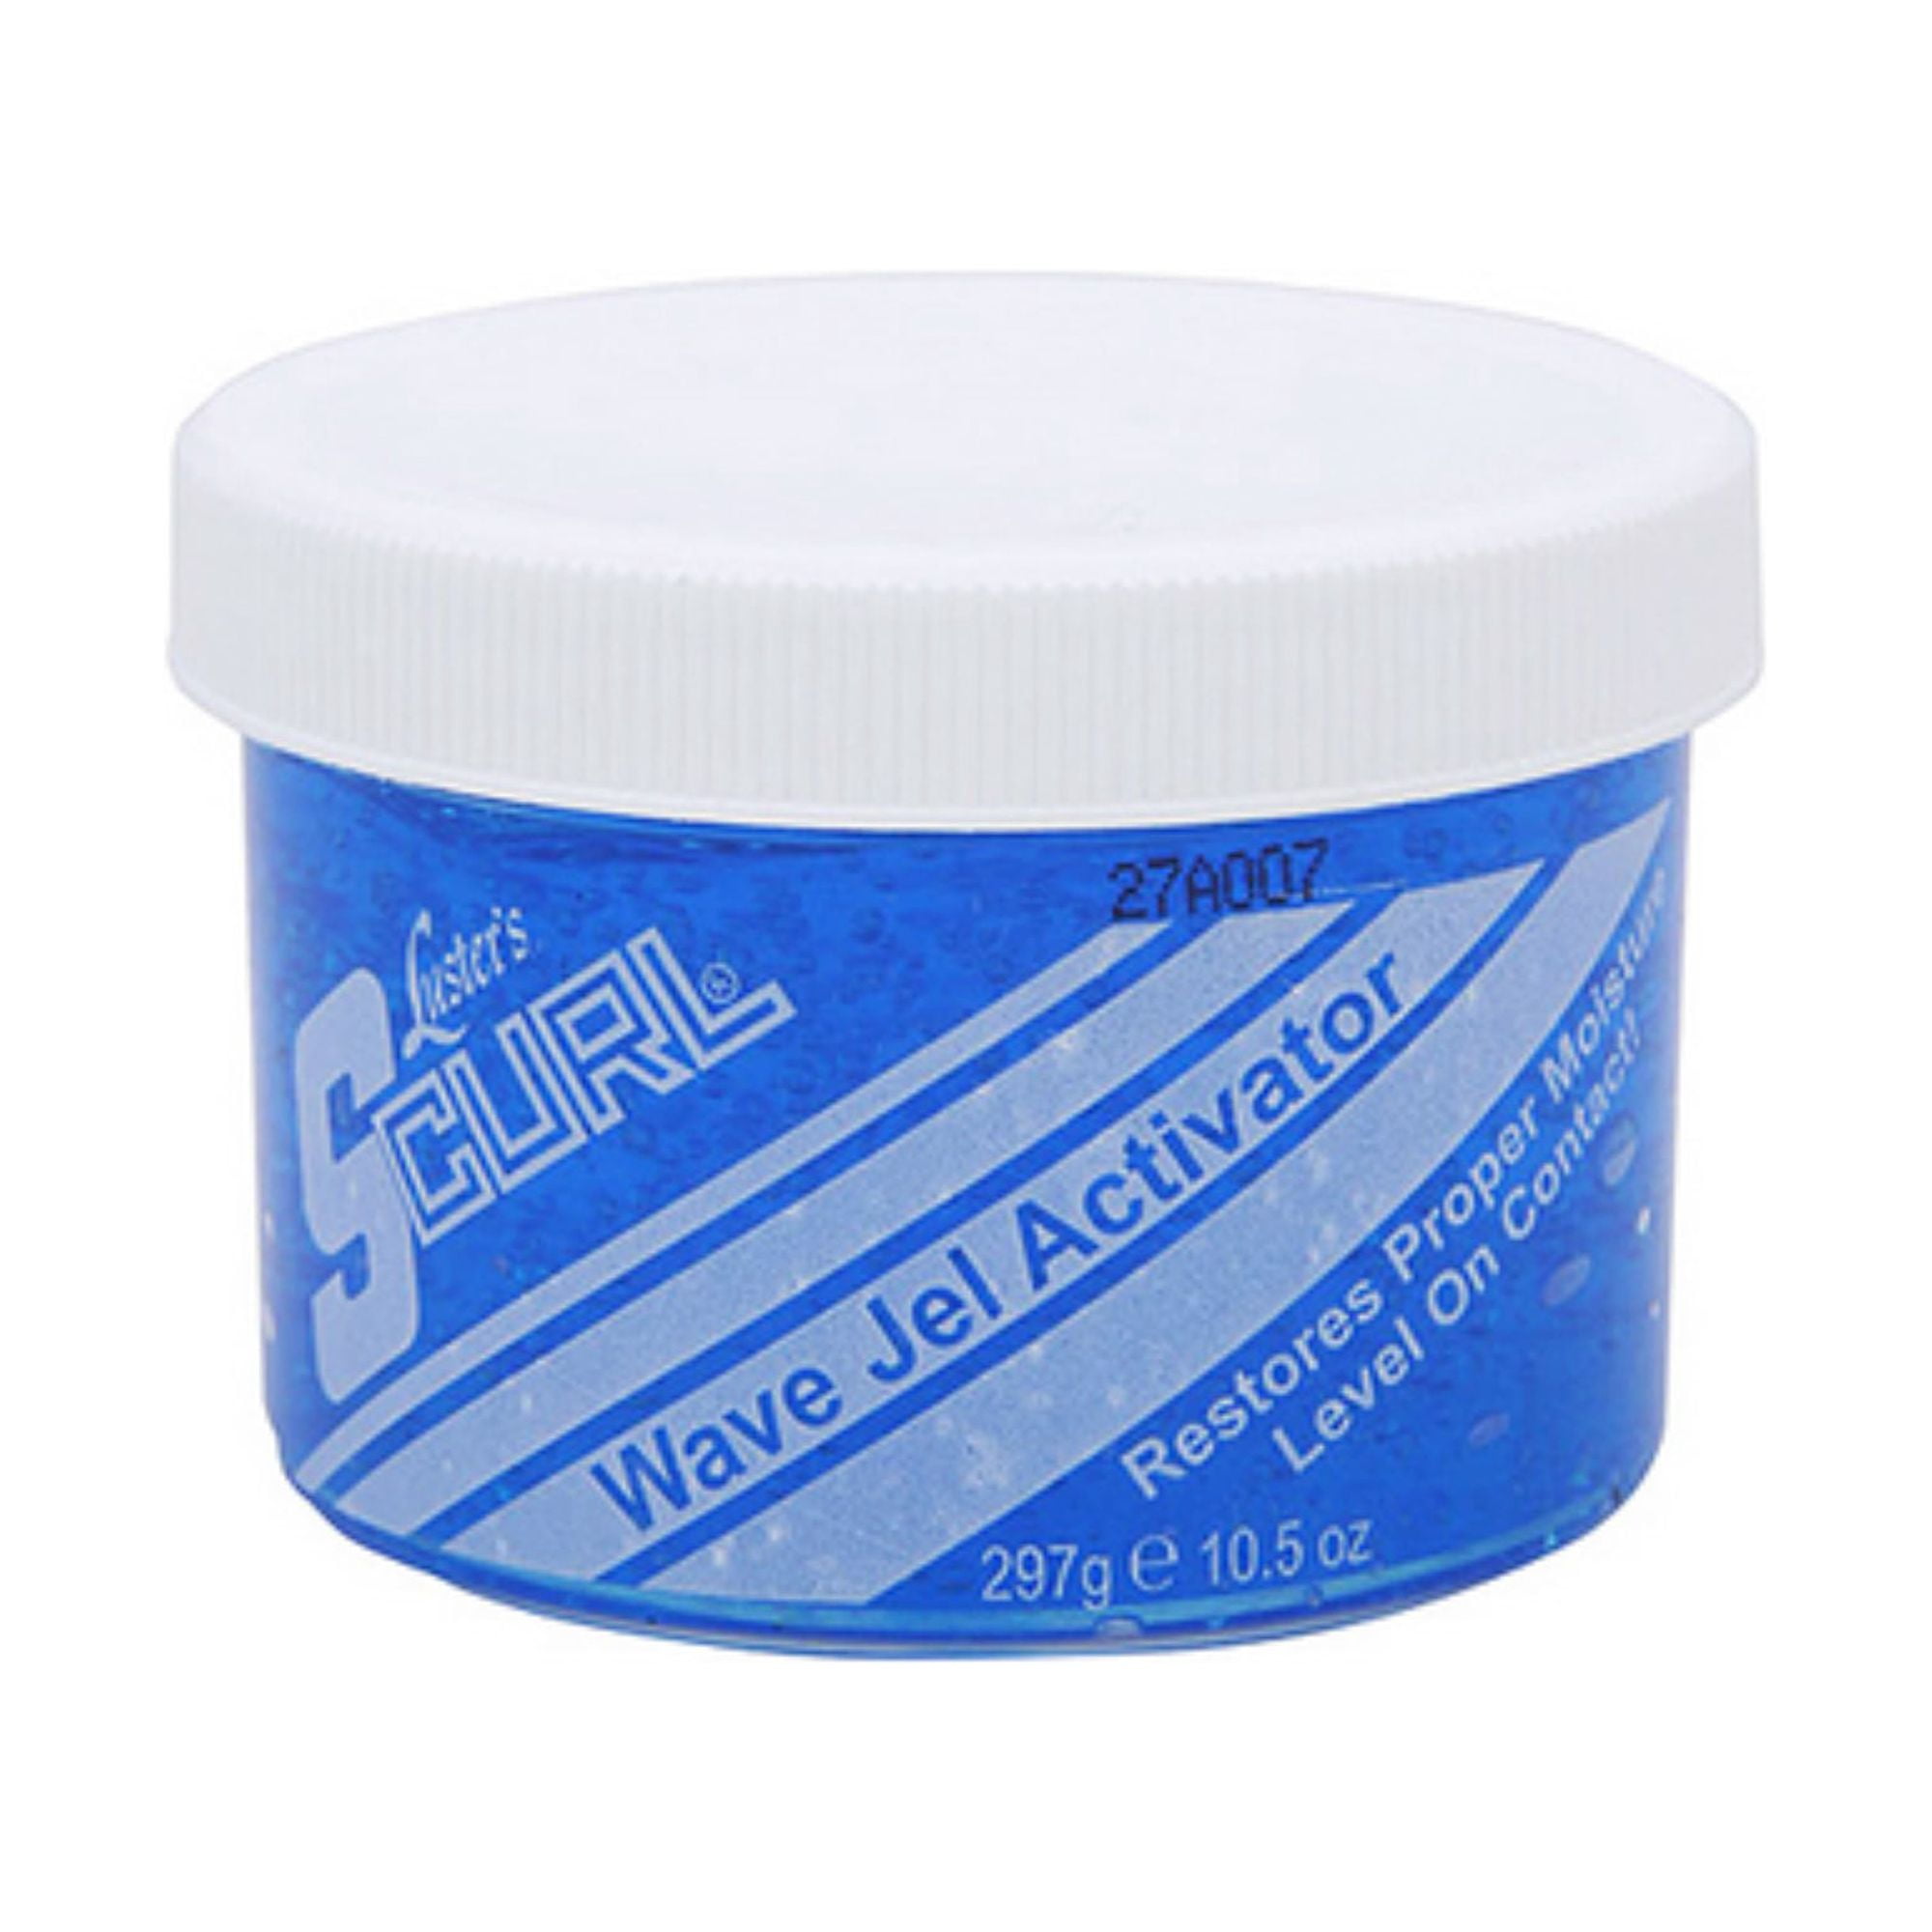 Forte Series Hair Molding Paste For Men (75 ml / 2.5 oz) 